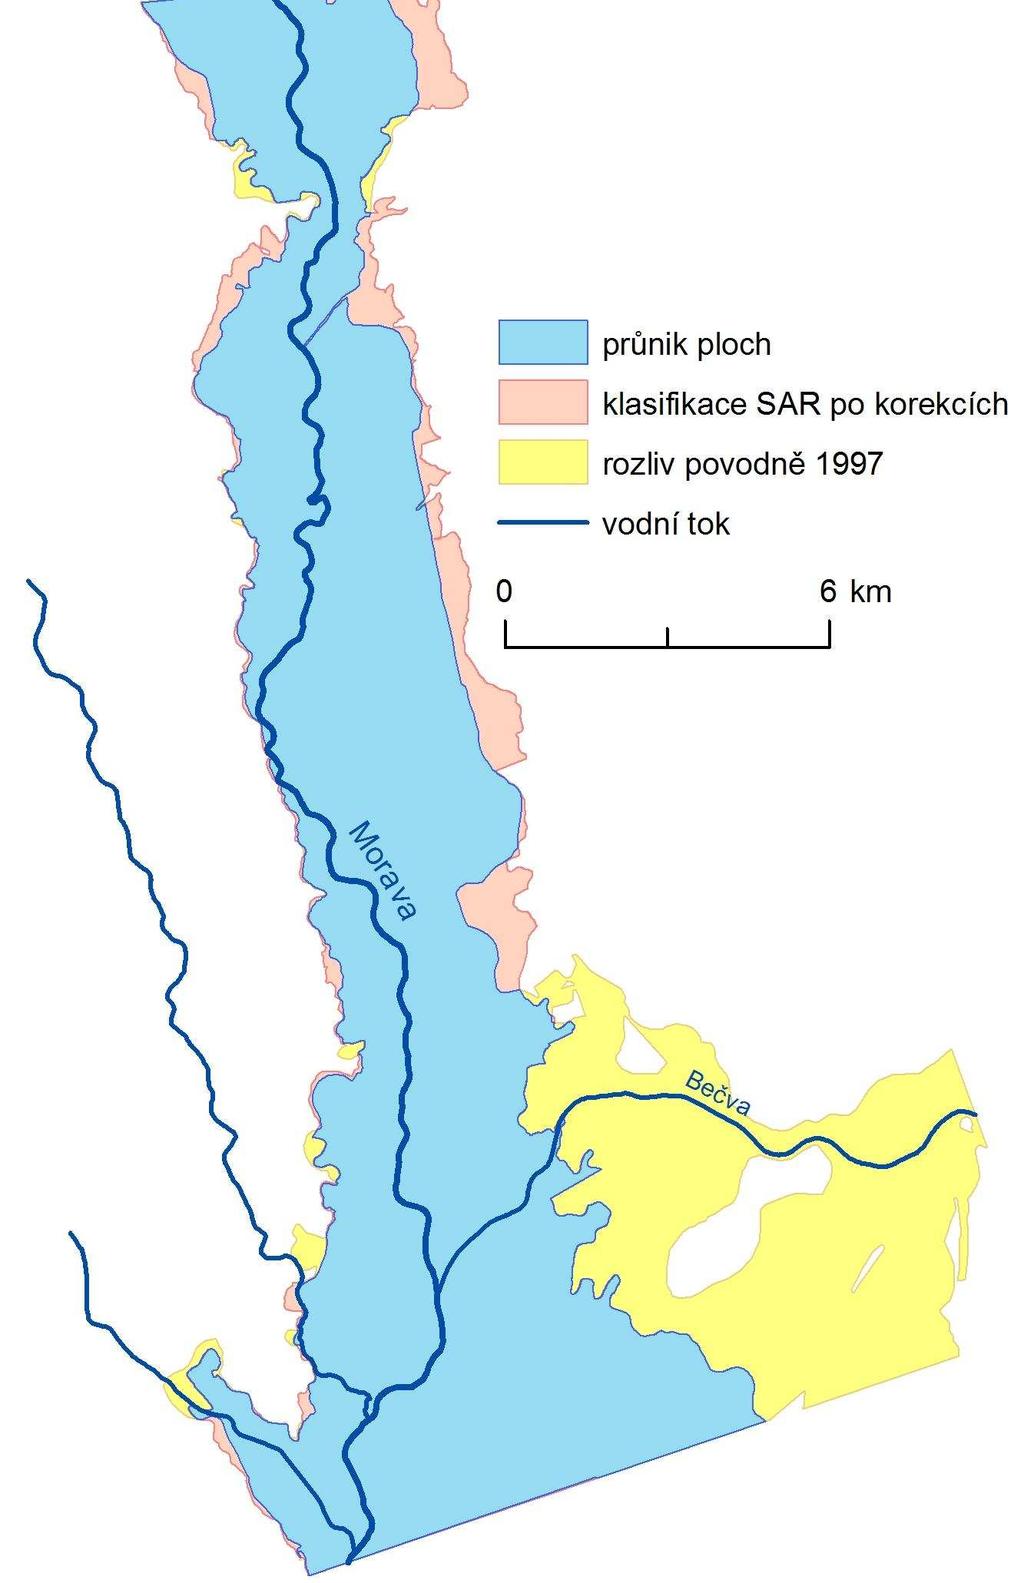 Následně došlo k porovnání s hranicí rozlivu povodně v roce 1997 poskytnutou Povodím Moravy (Obrázek 46).